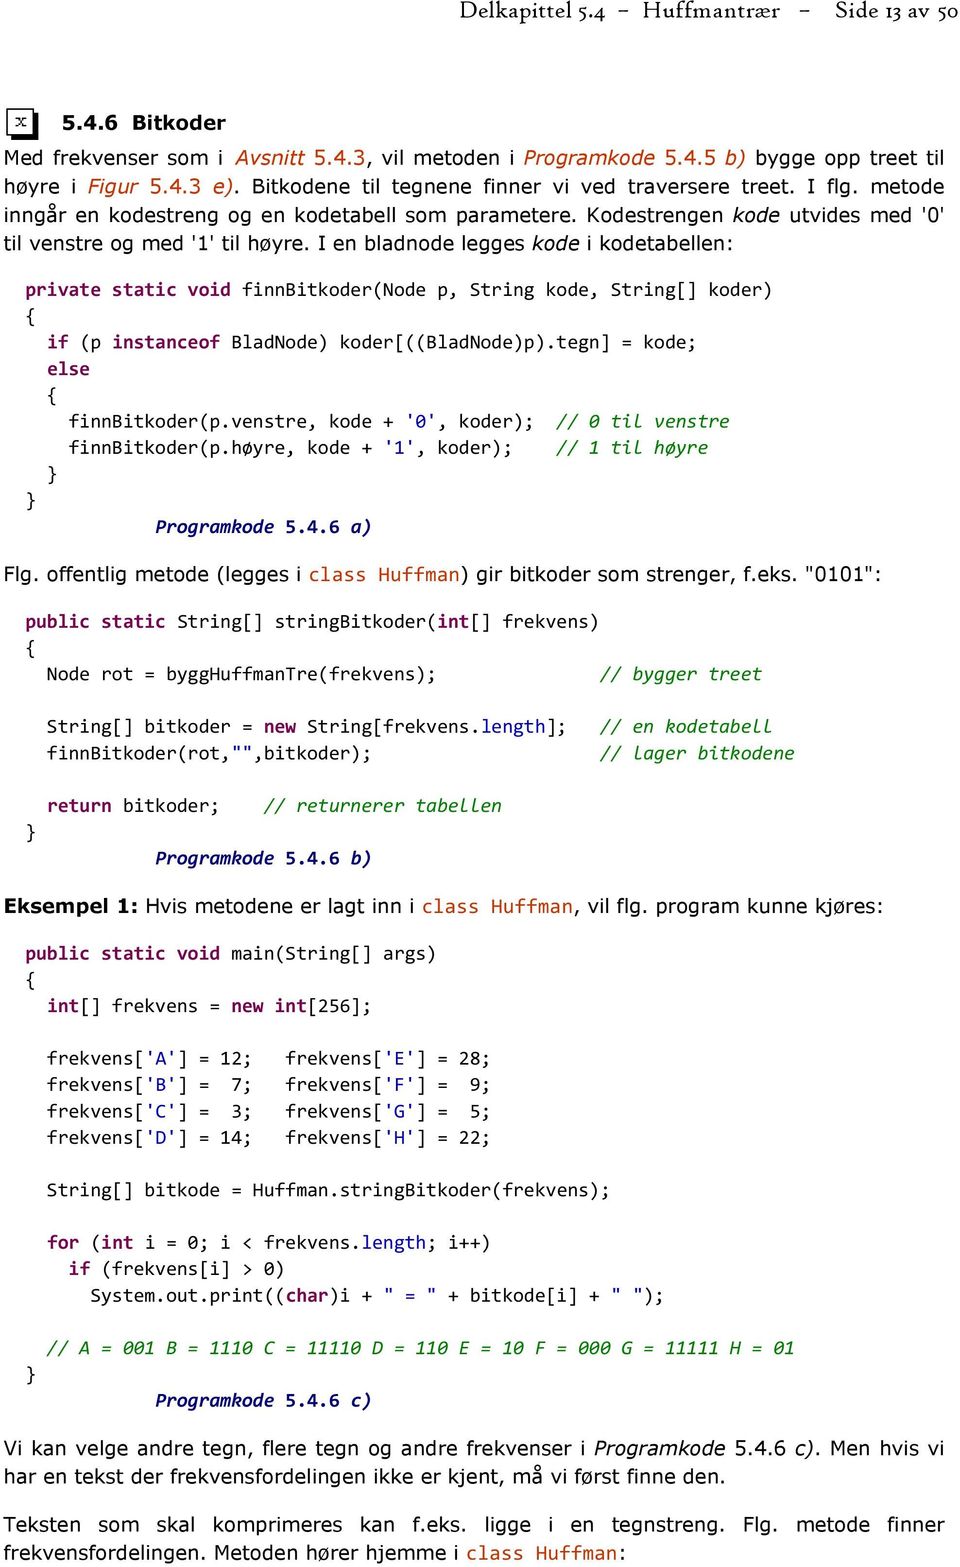 I en bladnode legges kode i kodetabellen: private static void finnbitkoder(node p, String kode, String[] koder) if (p instanceof BladNode) koder[((bladnode)p).tegn] = kode; else finnbitkoder(p.